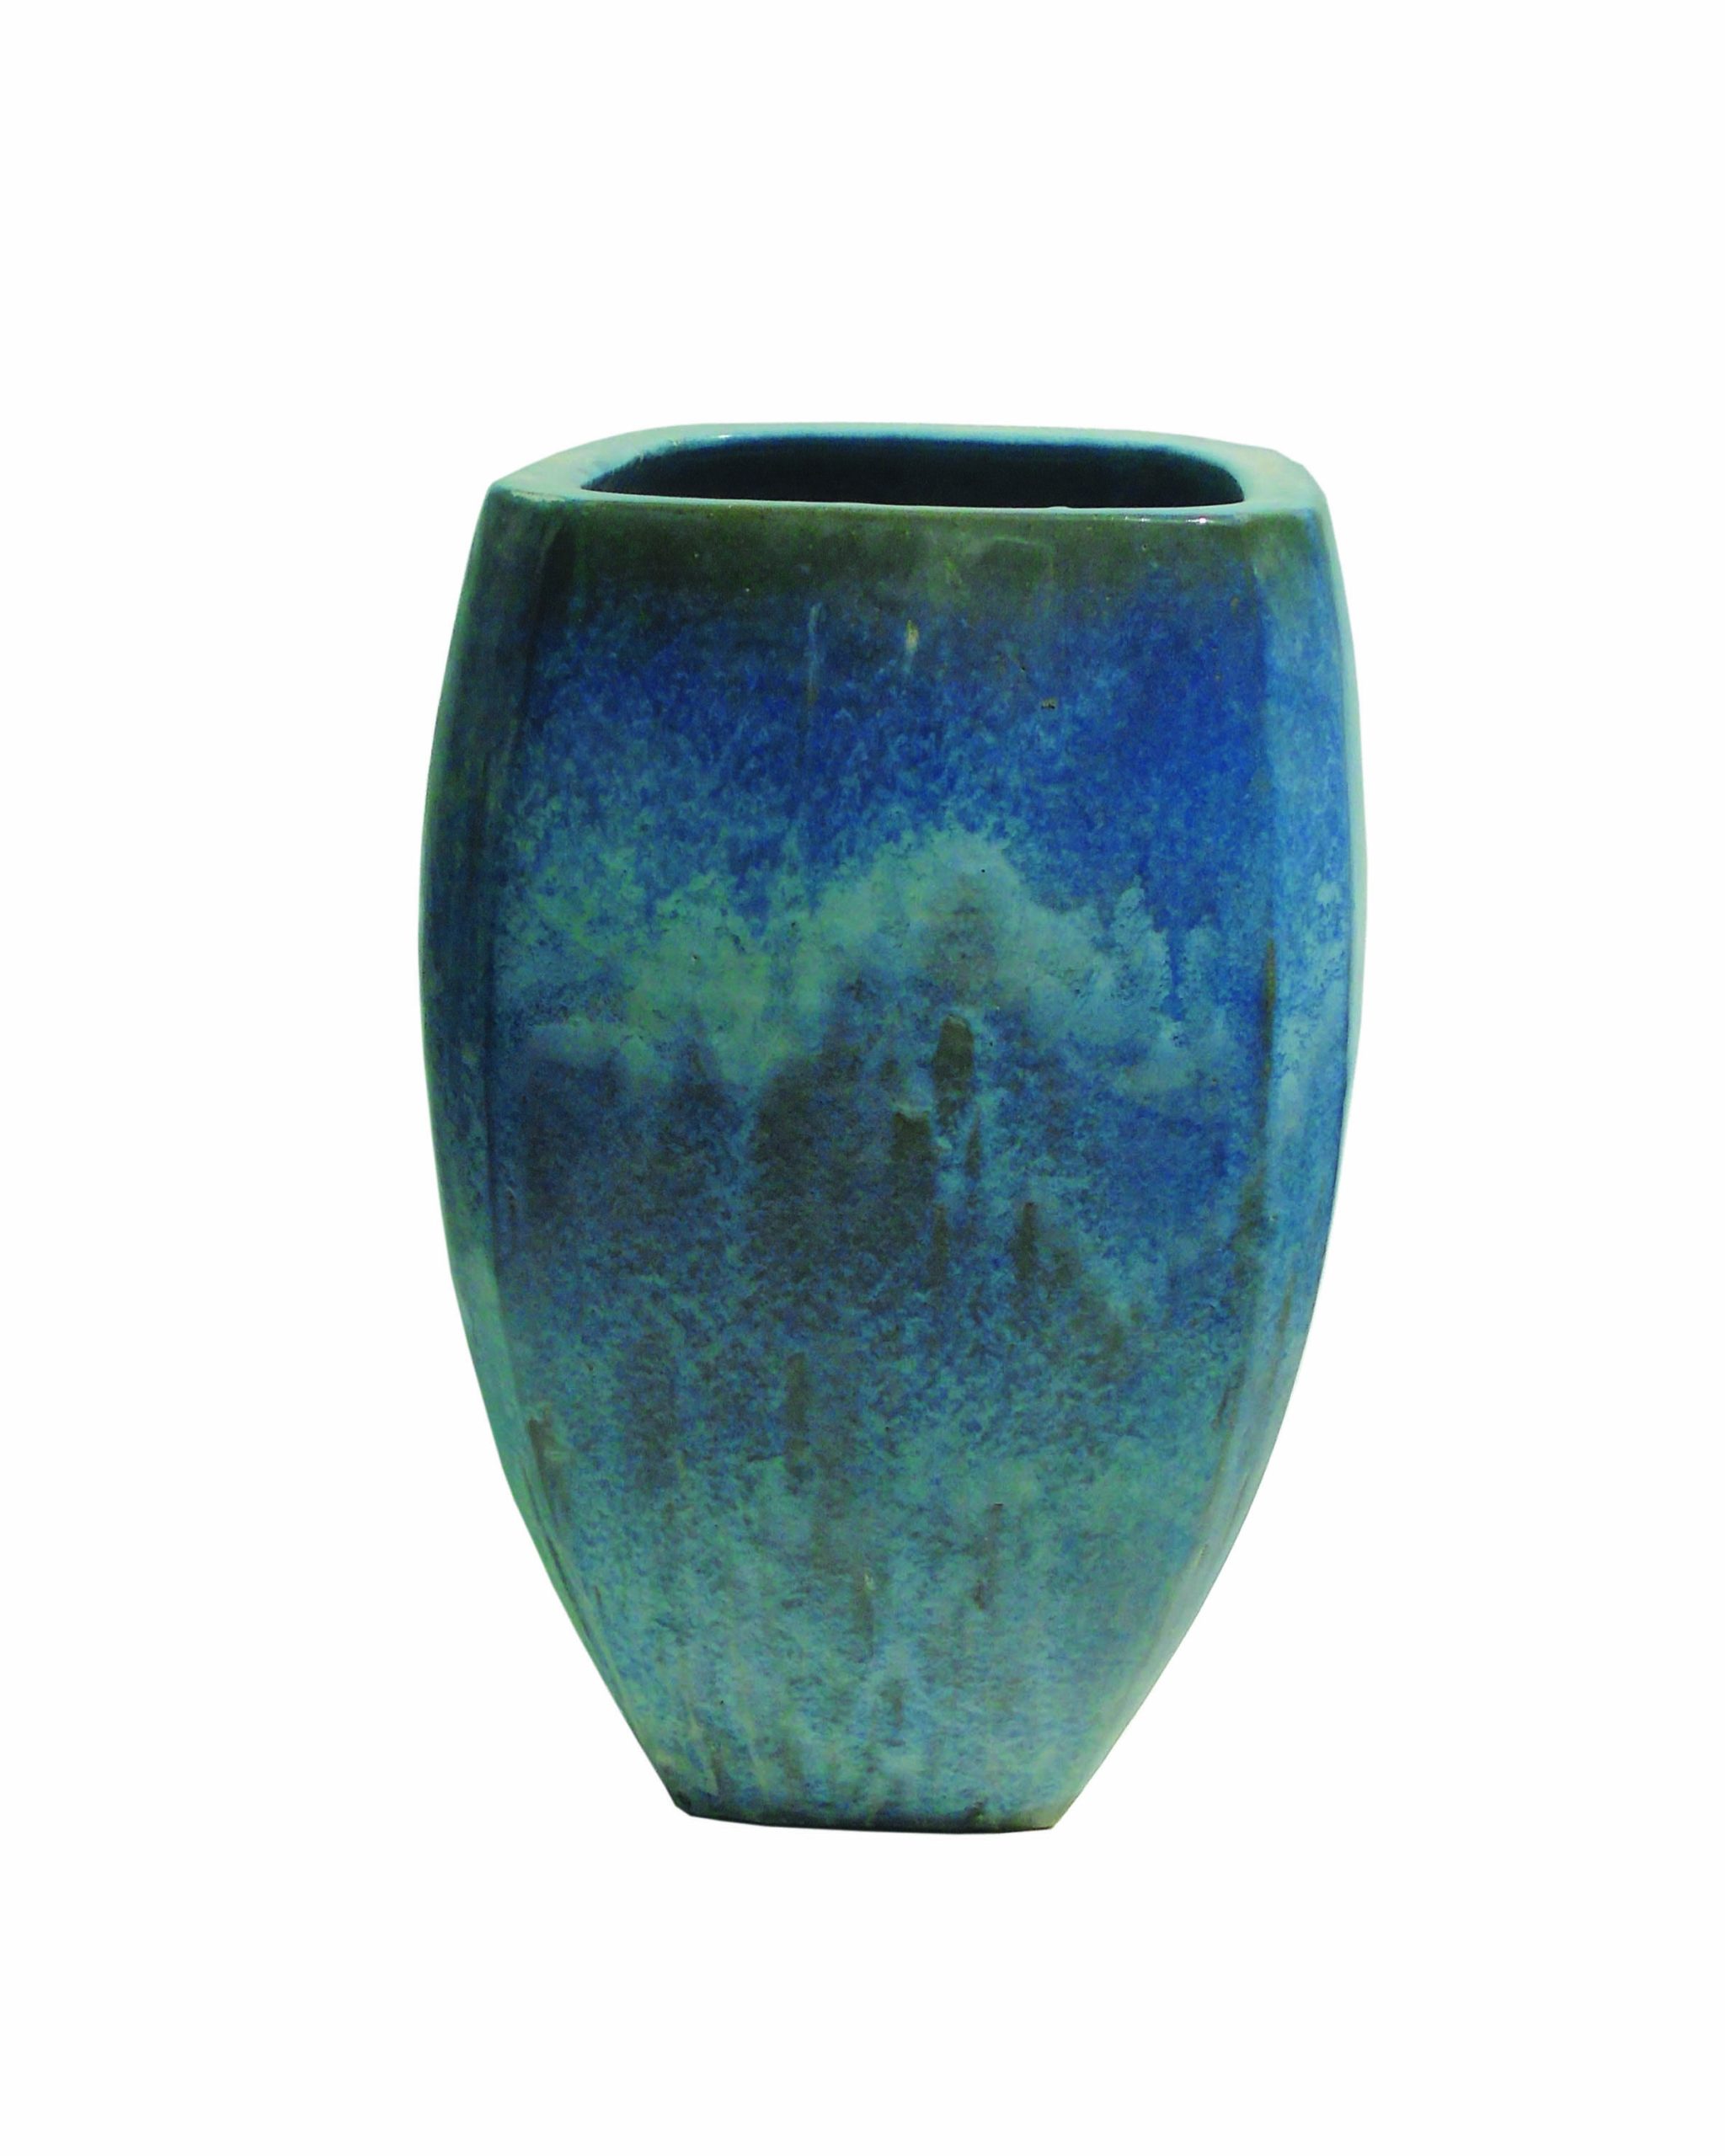 Buy Ceramic Coated Clay Pots Online on Qetaat.com